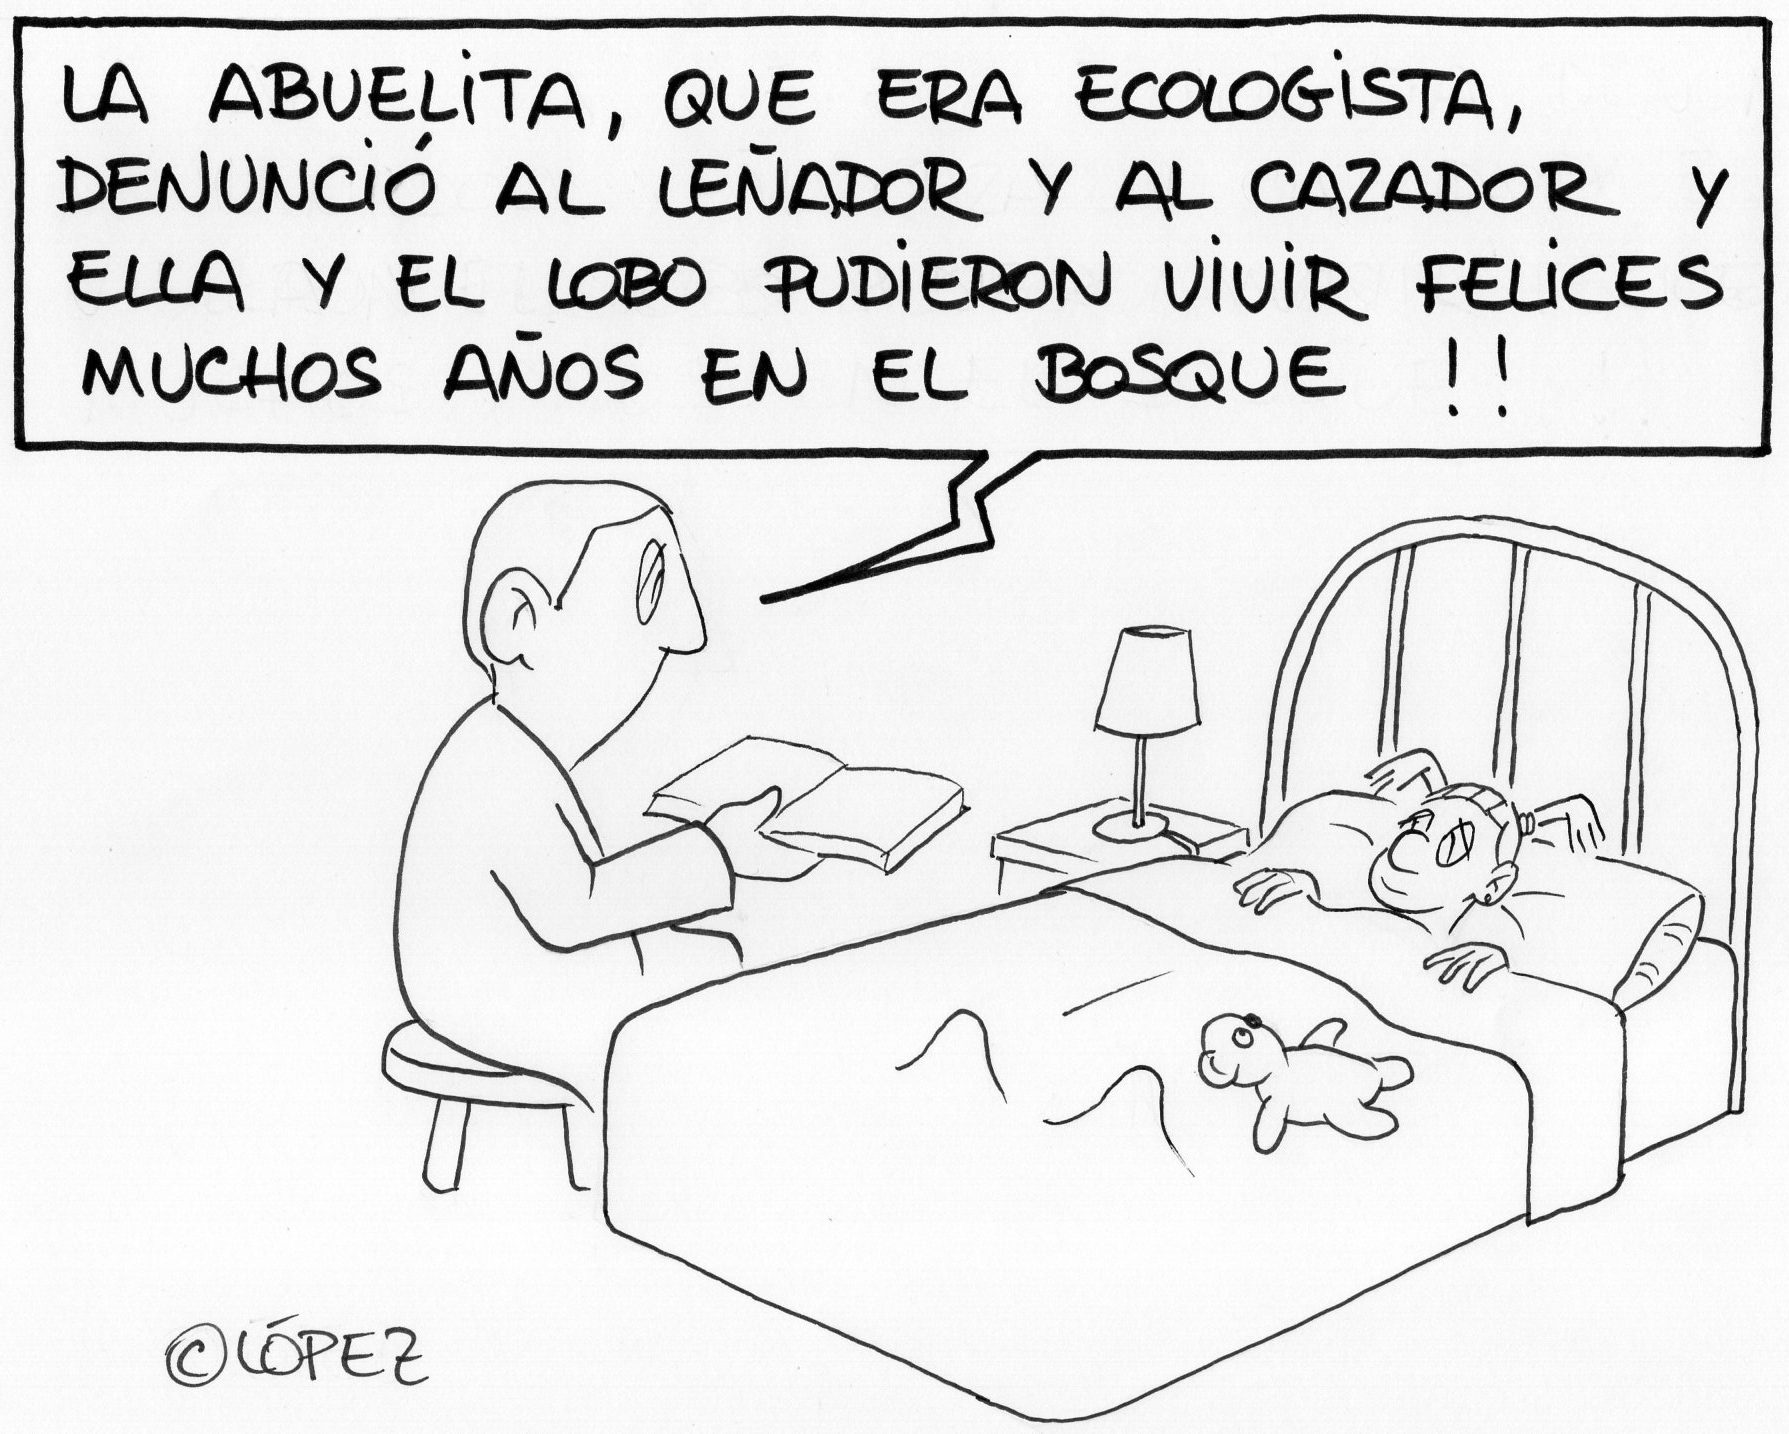 Sobre contar bien los cuentos. Por Juan López Rico (#López) en la bitácora de humor gráfico ambiental #VivalaBagatela en @efeverde